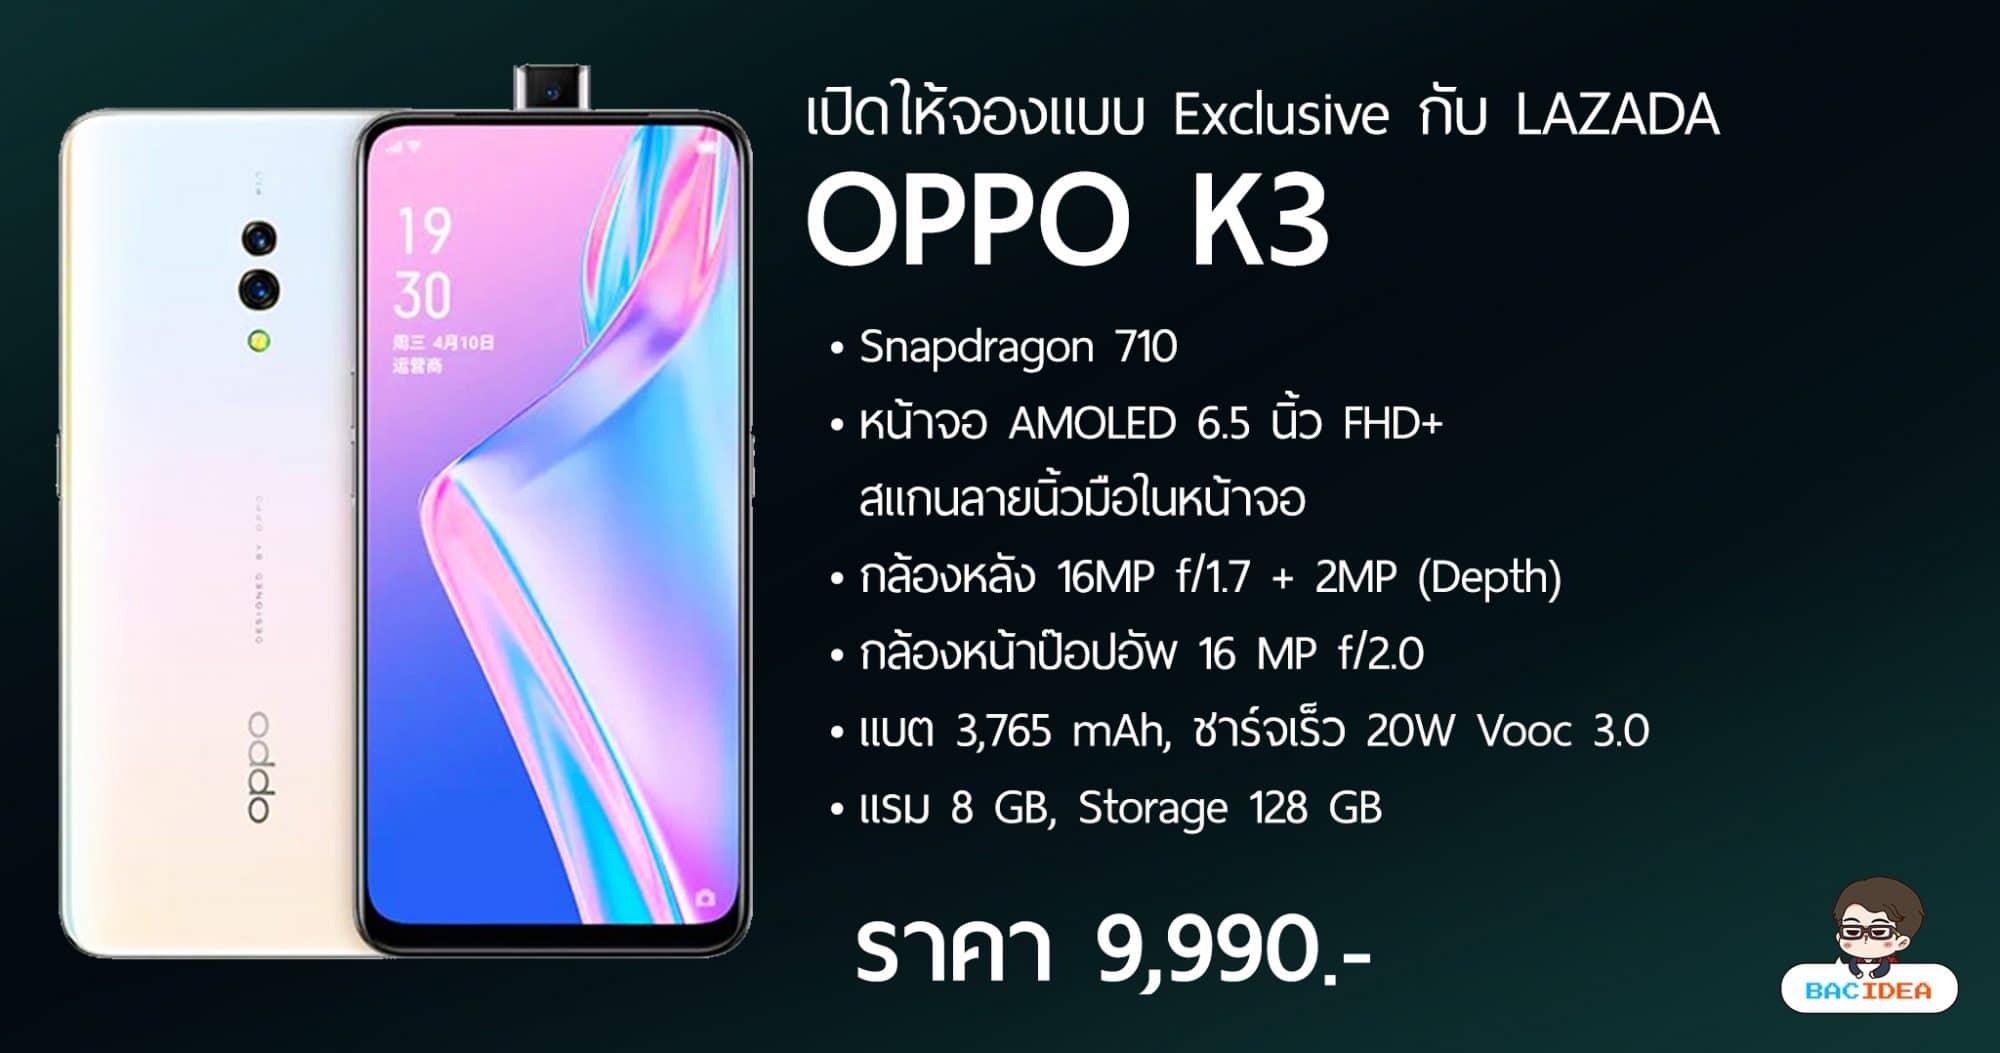 OPPO K3 เปิดให้จองแล้วในราคา 9,990.- รับของแถมรวมมูลค่า 7,179.- 1